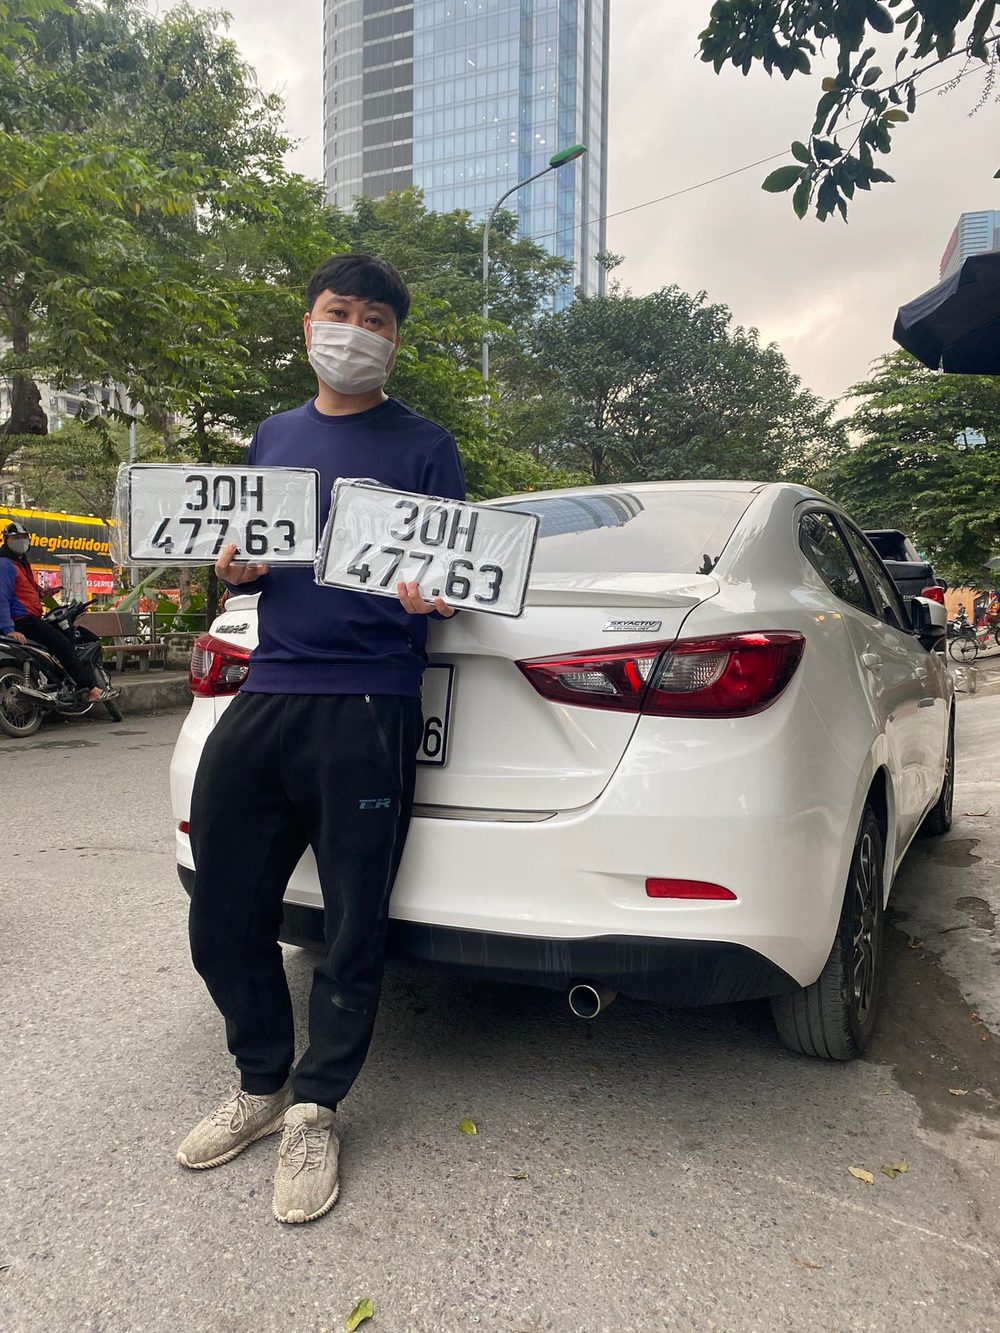 Chuyên gia nổi tiếng thách thức tài xế taxi so găng và cuộc thi lần đầu có ở Việt Nam - Ảnh 4.